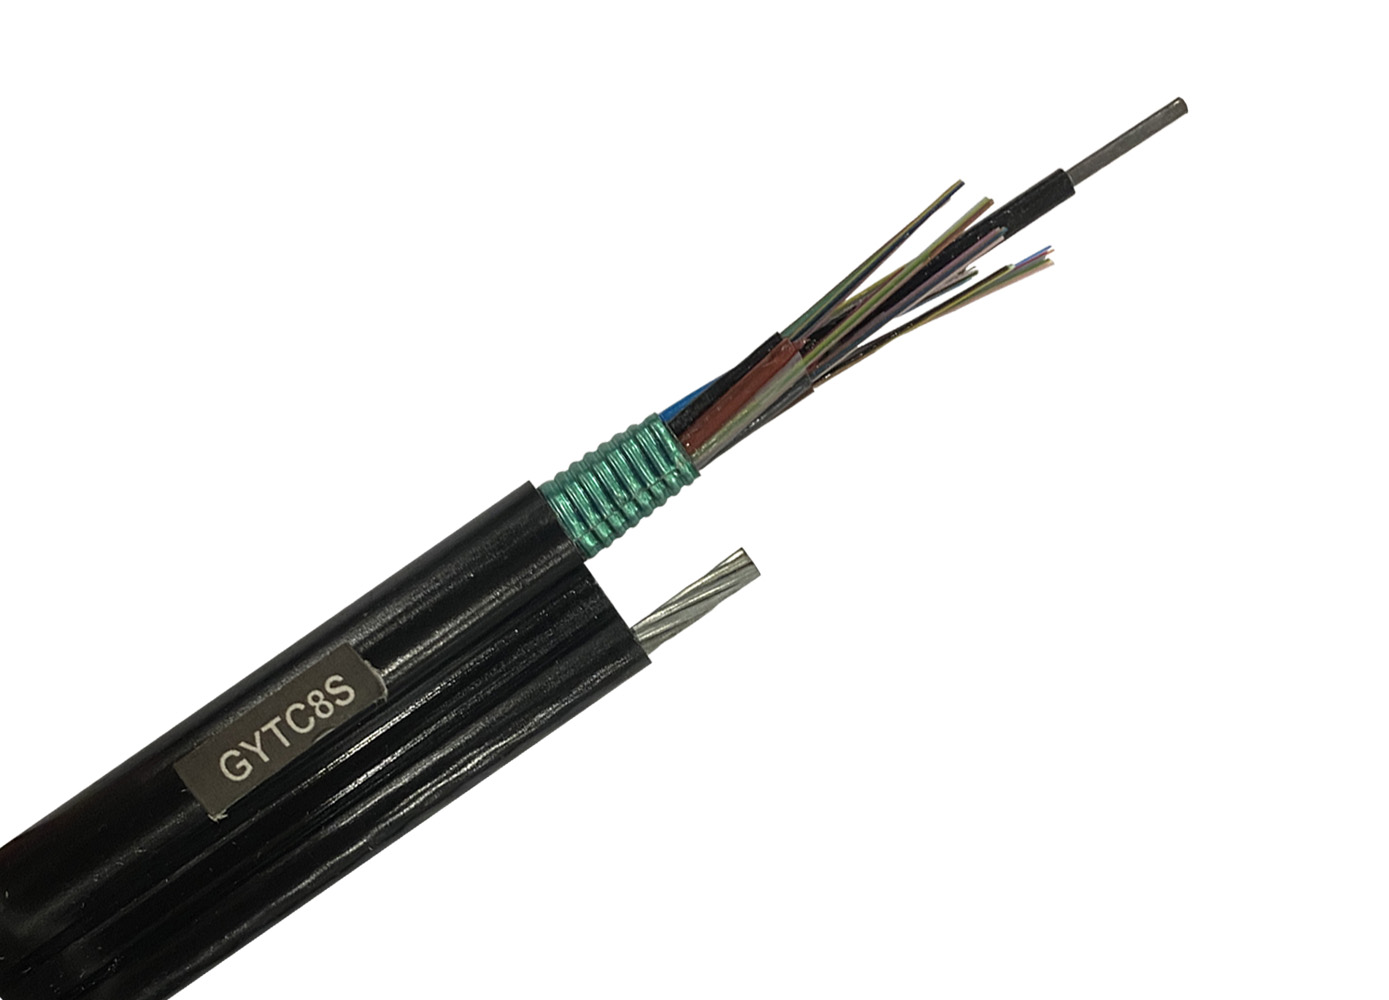 GYTC8S光缆参数 GYTC8S光缆生产厂家 架空光缆厂家